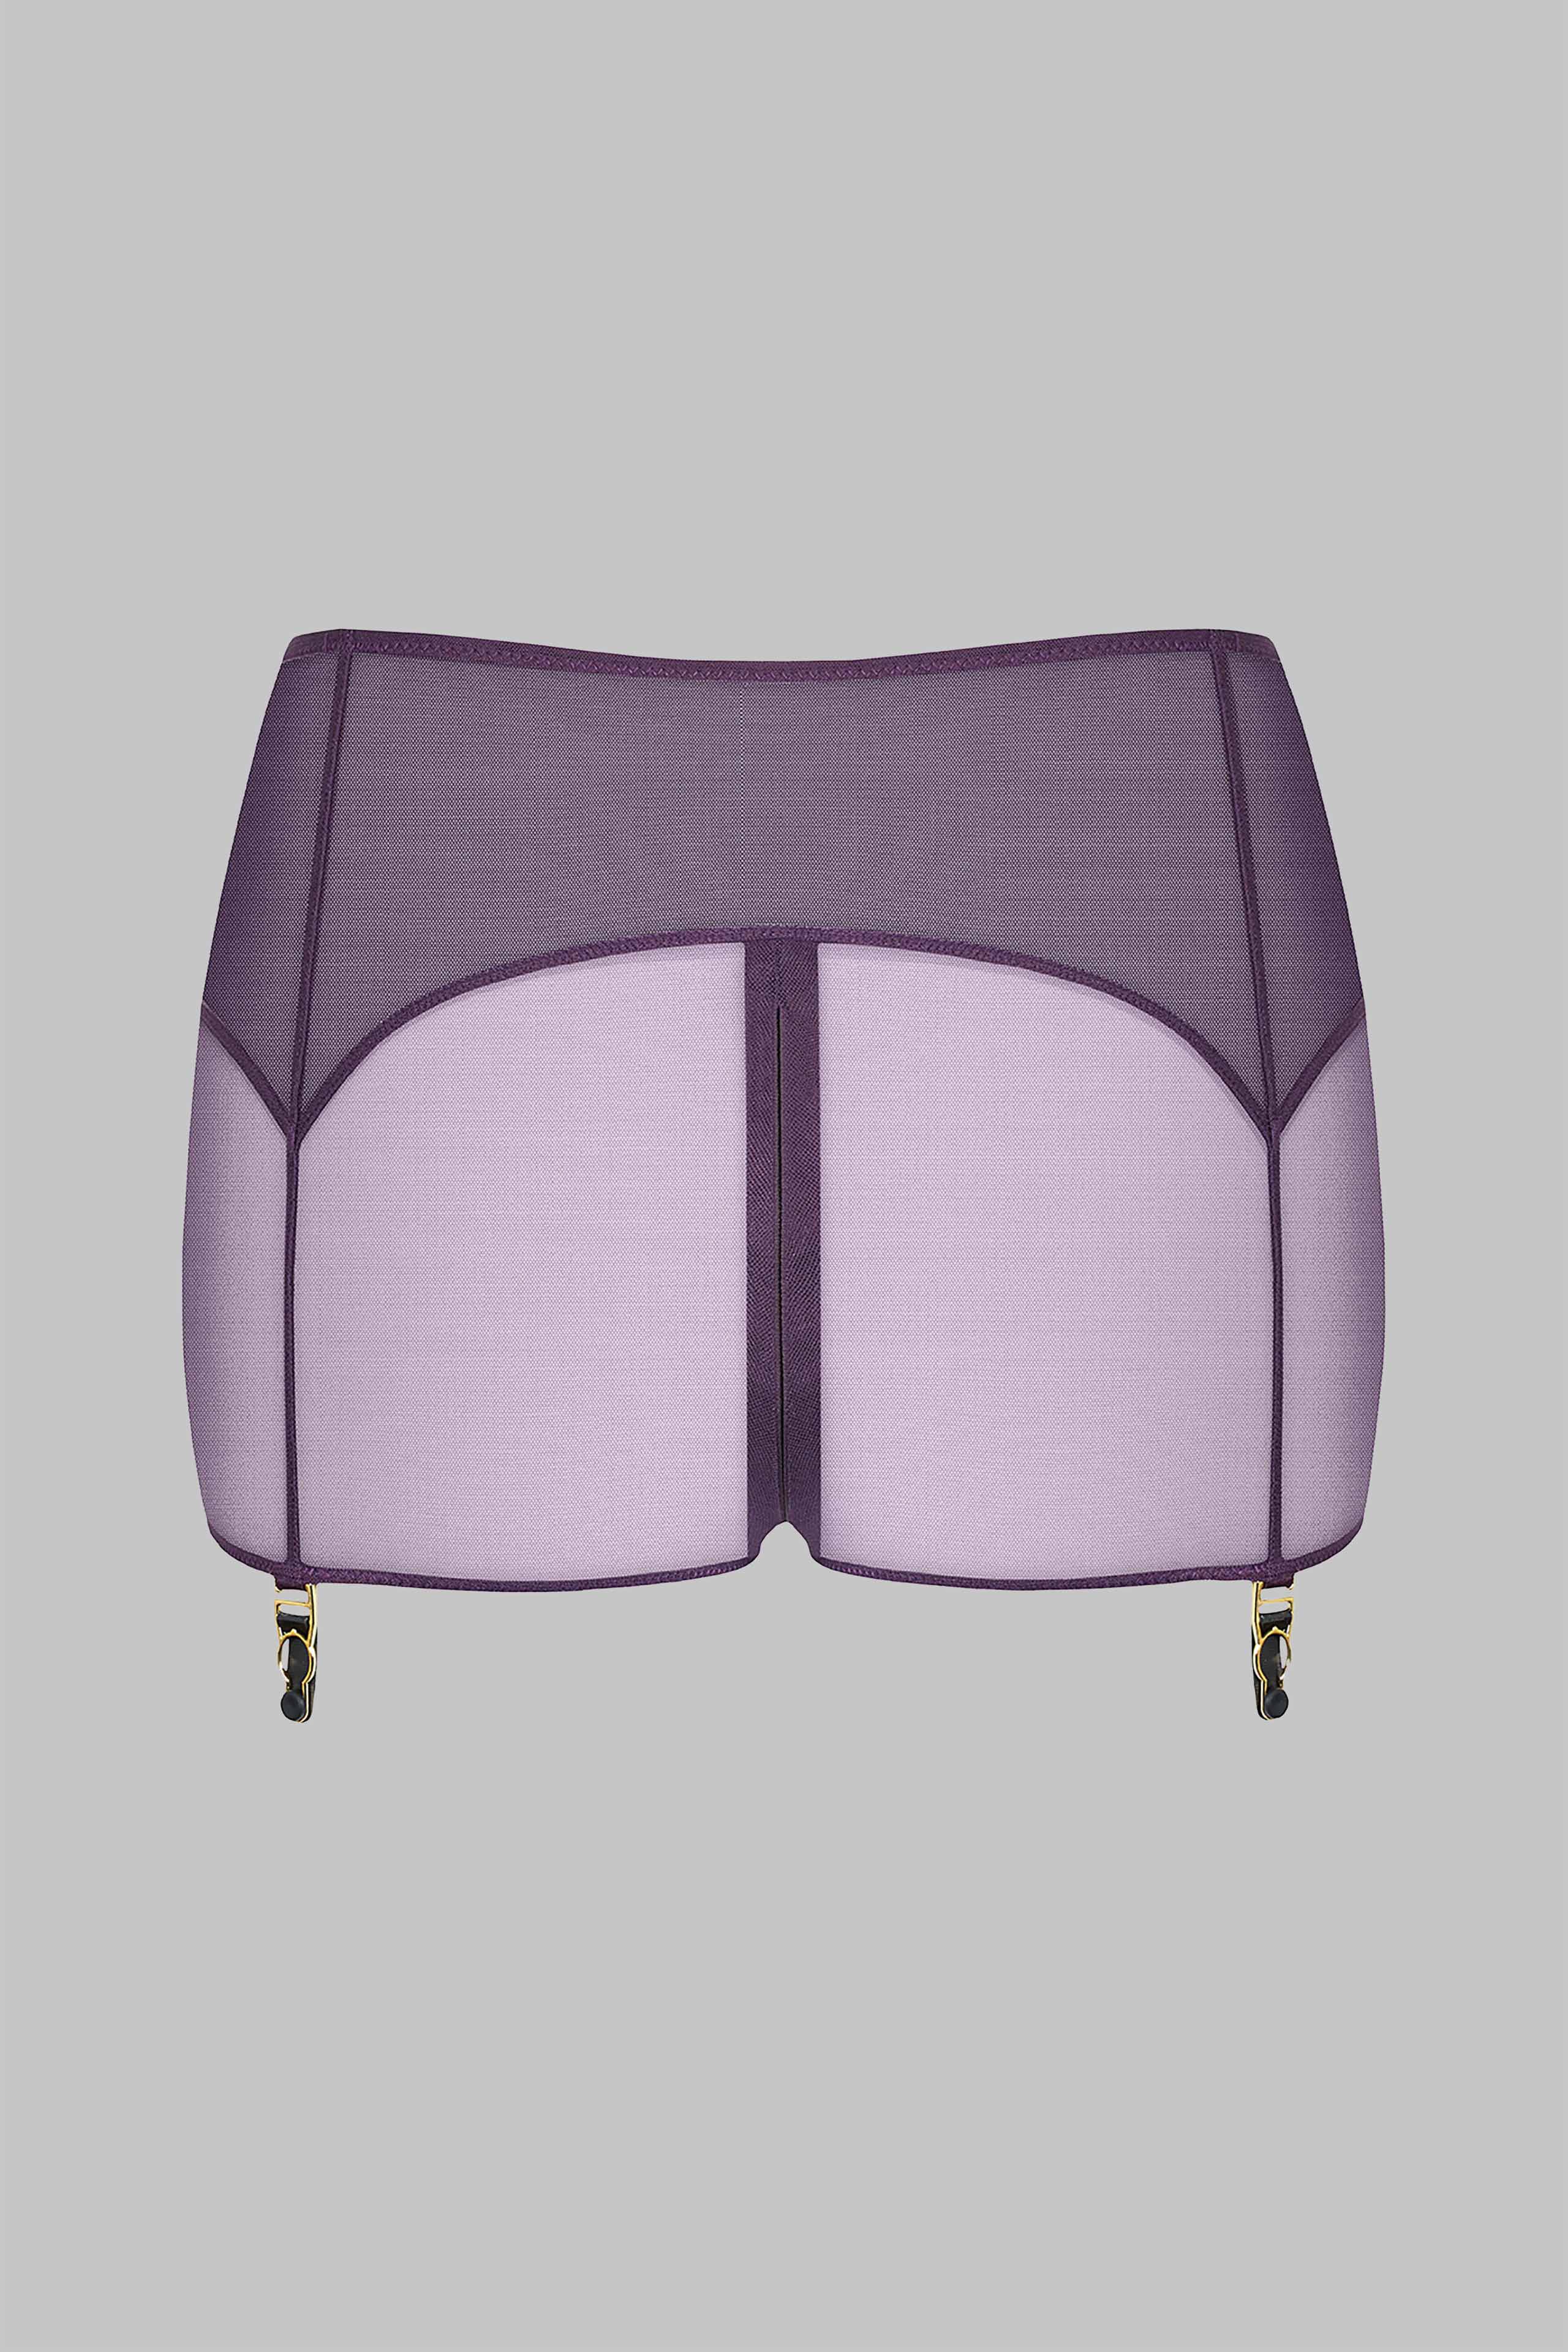 shorty-zippe-porte-jarretelles-lamoureuse-orchidee-violette-maison-close